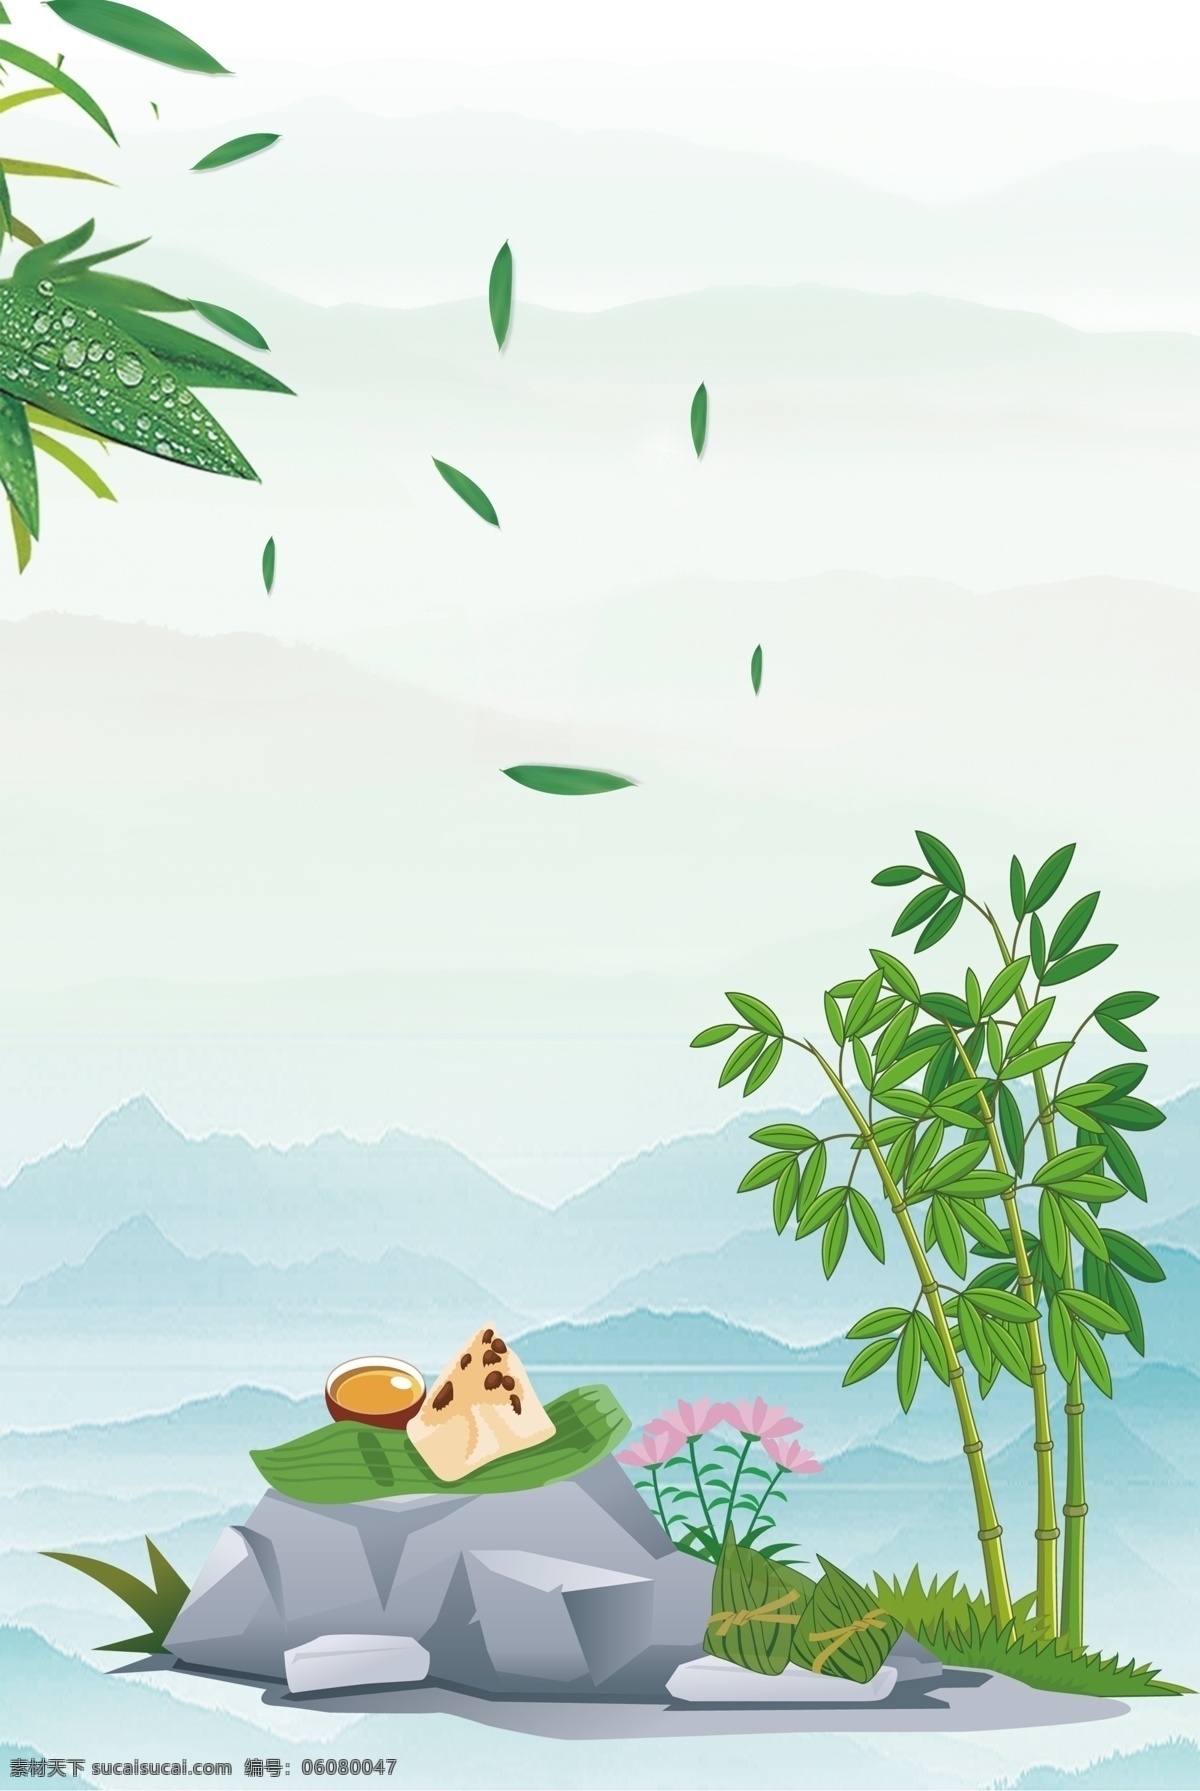 青色 渐变 清雅 端午节 海报 背景 复古 中国风 文艺 卡通 手绘 纹理 粽子 竹子